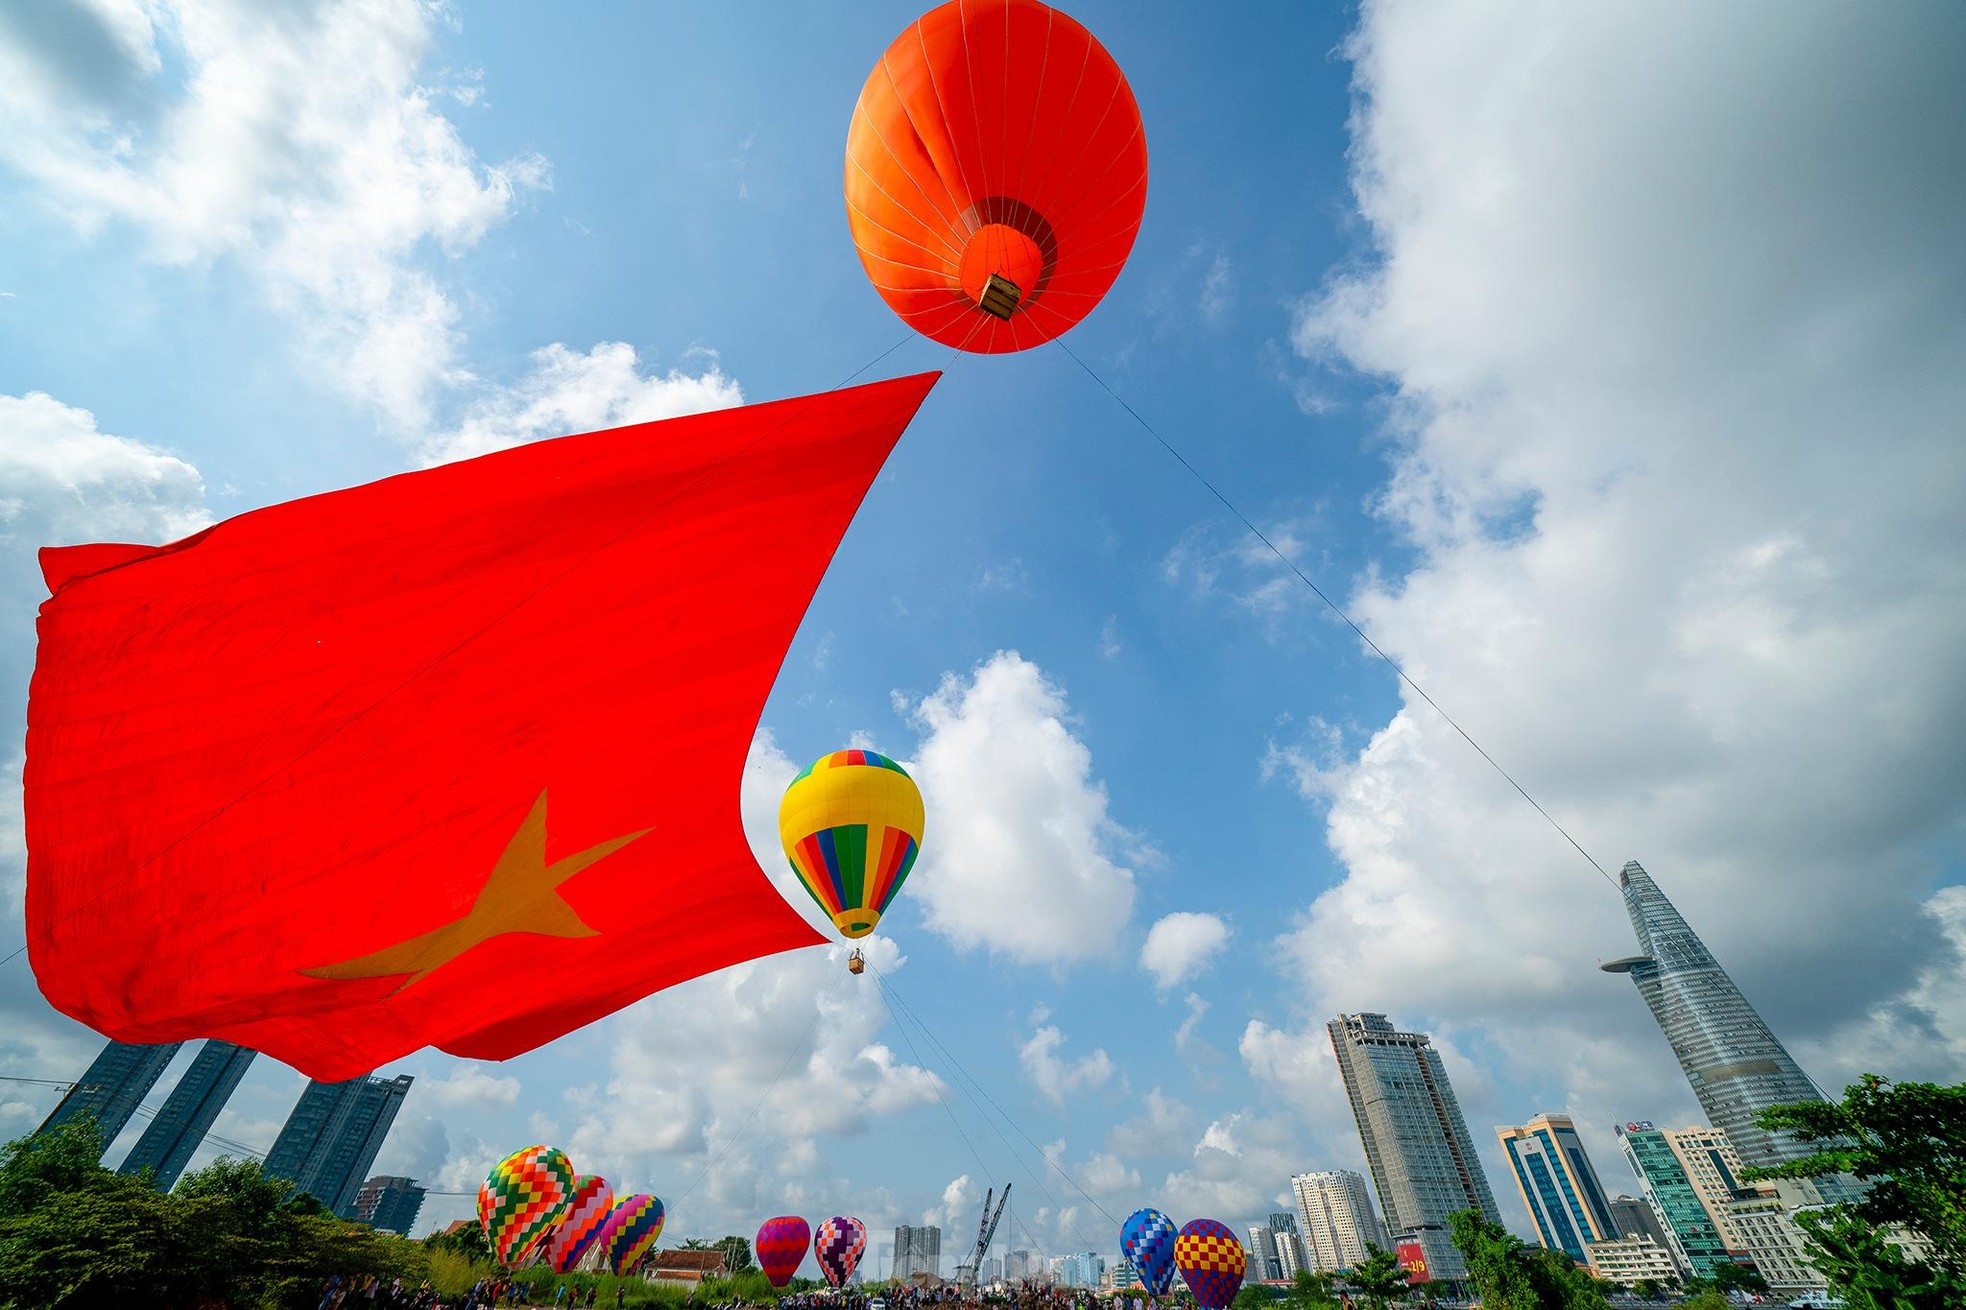 Cận cảnh khinh khí cầu kéo Quốc kỳ rộng 1800m2 mừng Quốc khánh 2/9 - Ảnh 17.